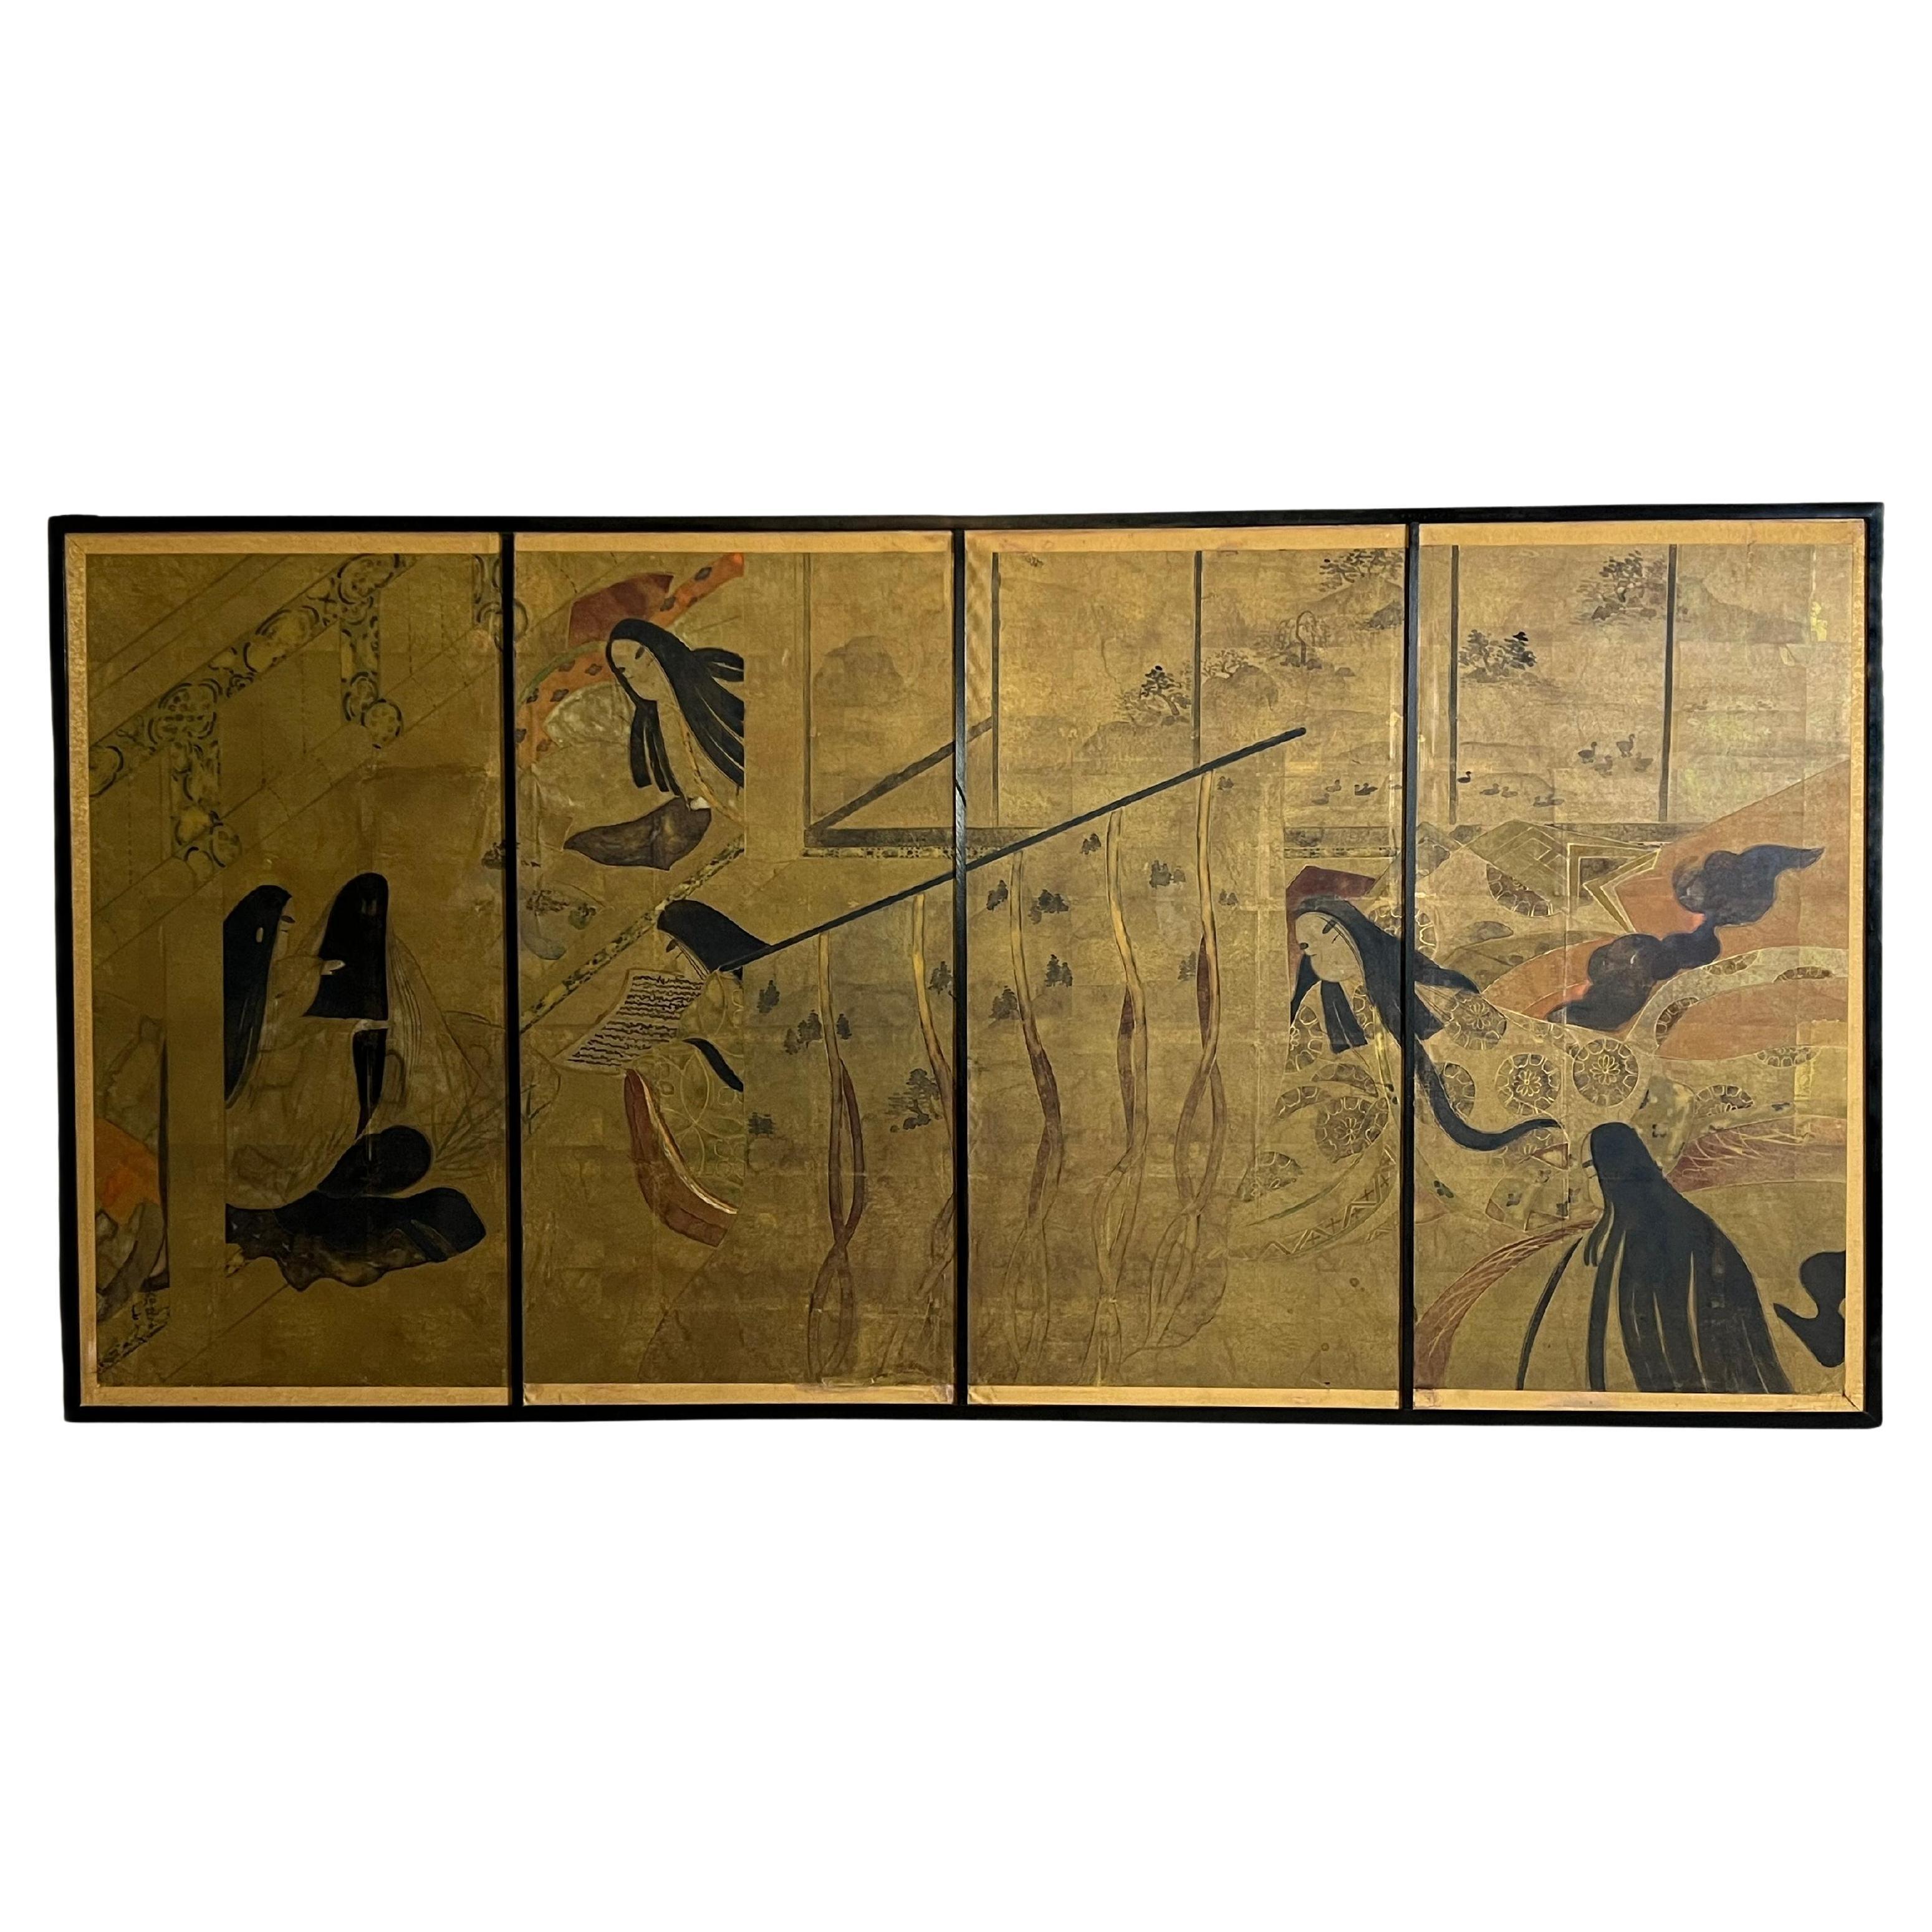 Große Lithographie einer japanischen Szene nach der Geschichte von Genji